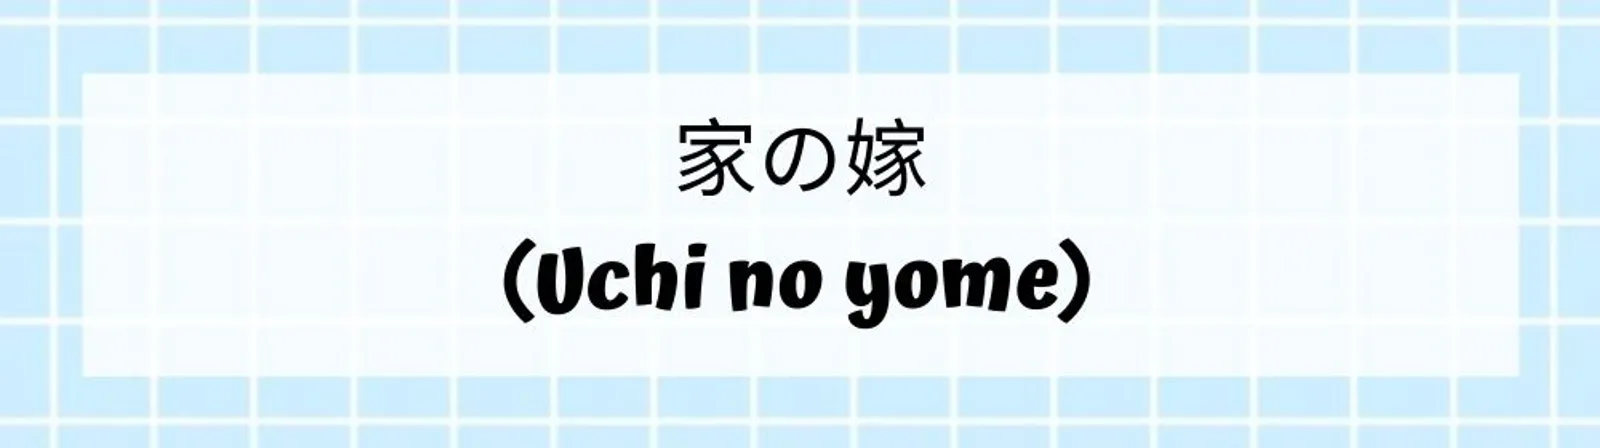 20 Panggilan Sayang dalam Bahasa Jepang Terlengkap